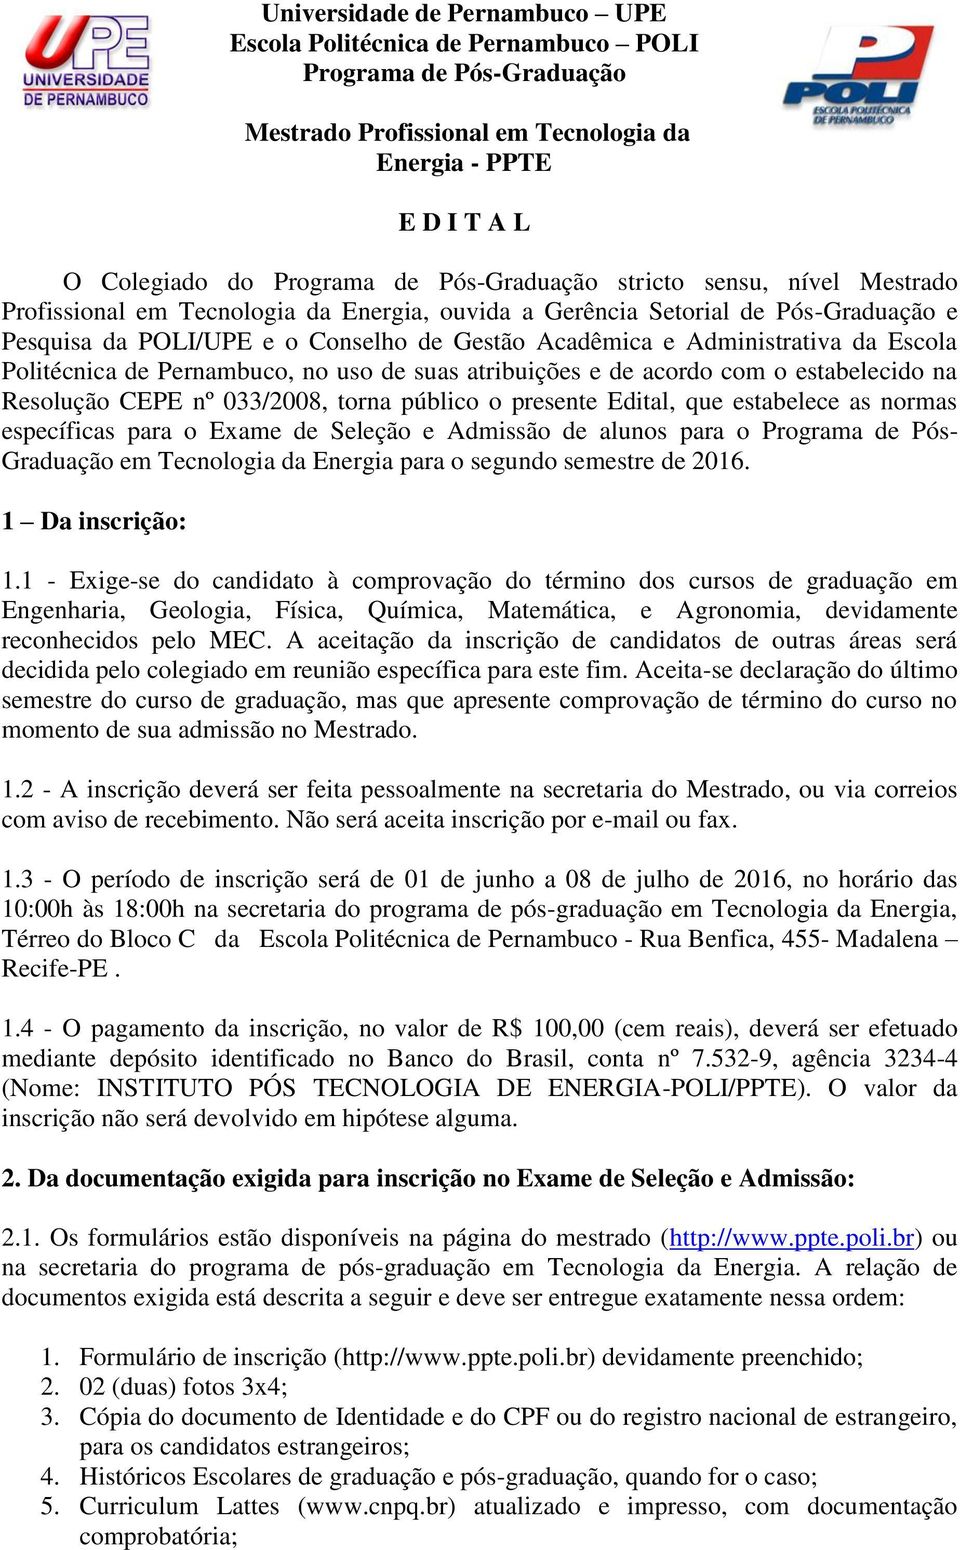 da Escola Politécnica de Pernambuco, no uso de suas atribuições e de acordo com o estabelecido na Resolução CEPE nº 033/2008, torna público o presente Edital, que estabelece as normas específicas